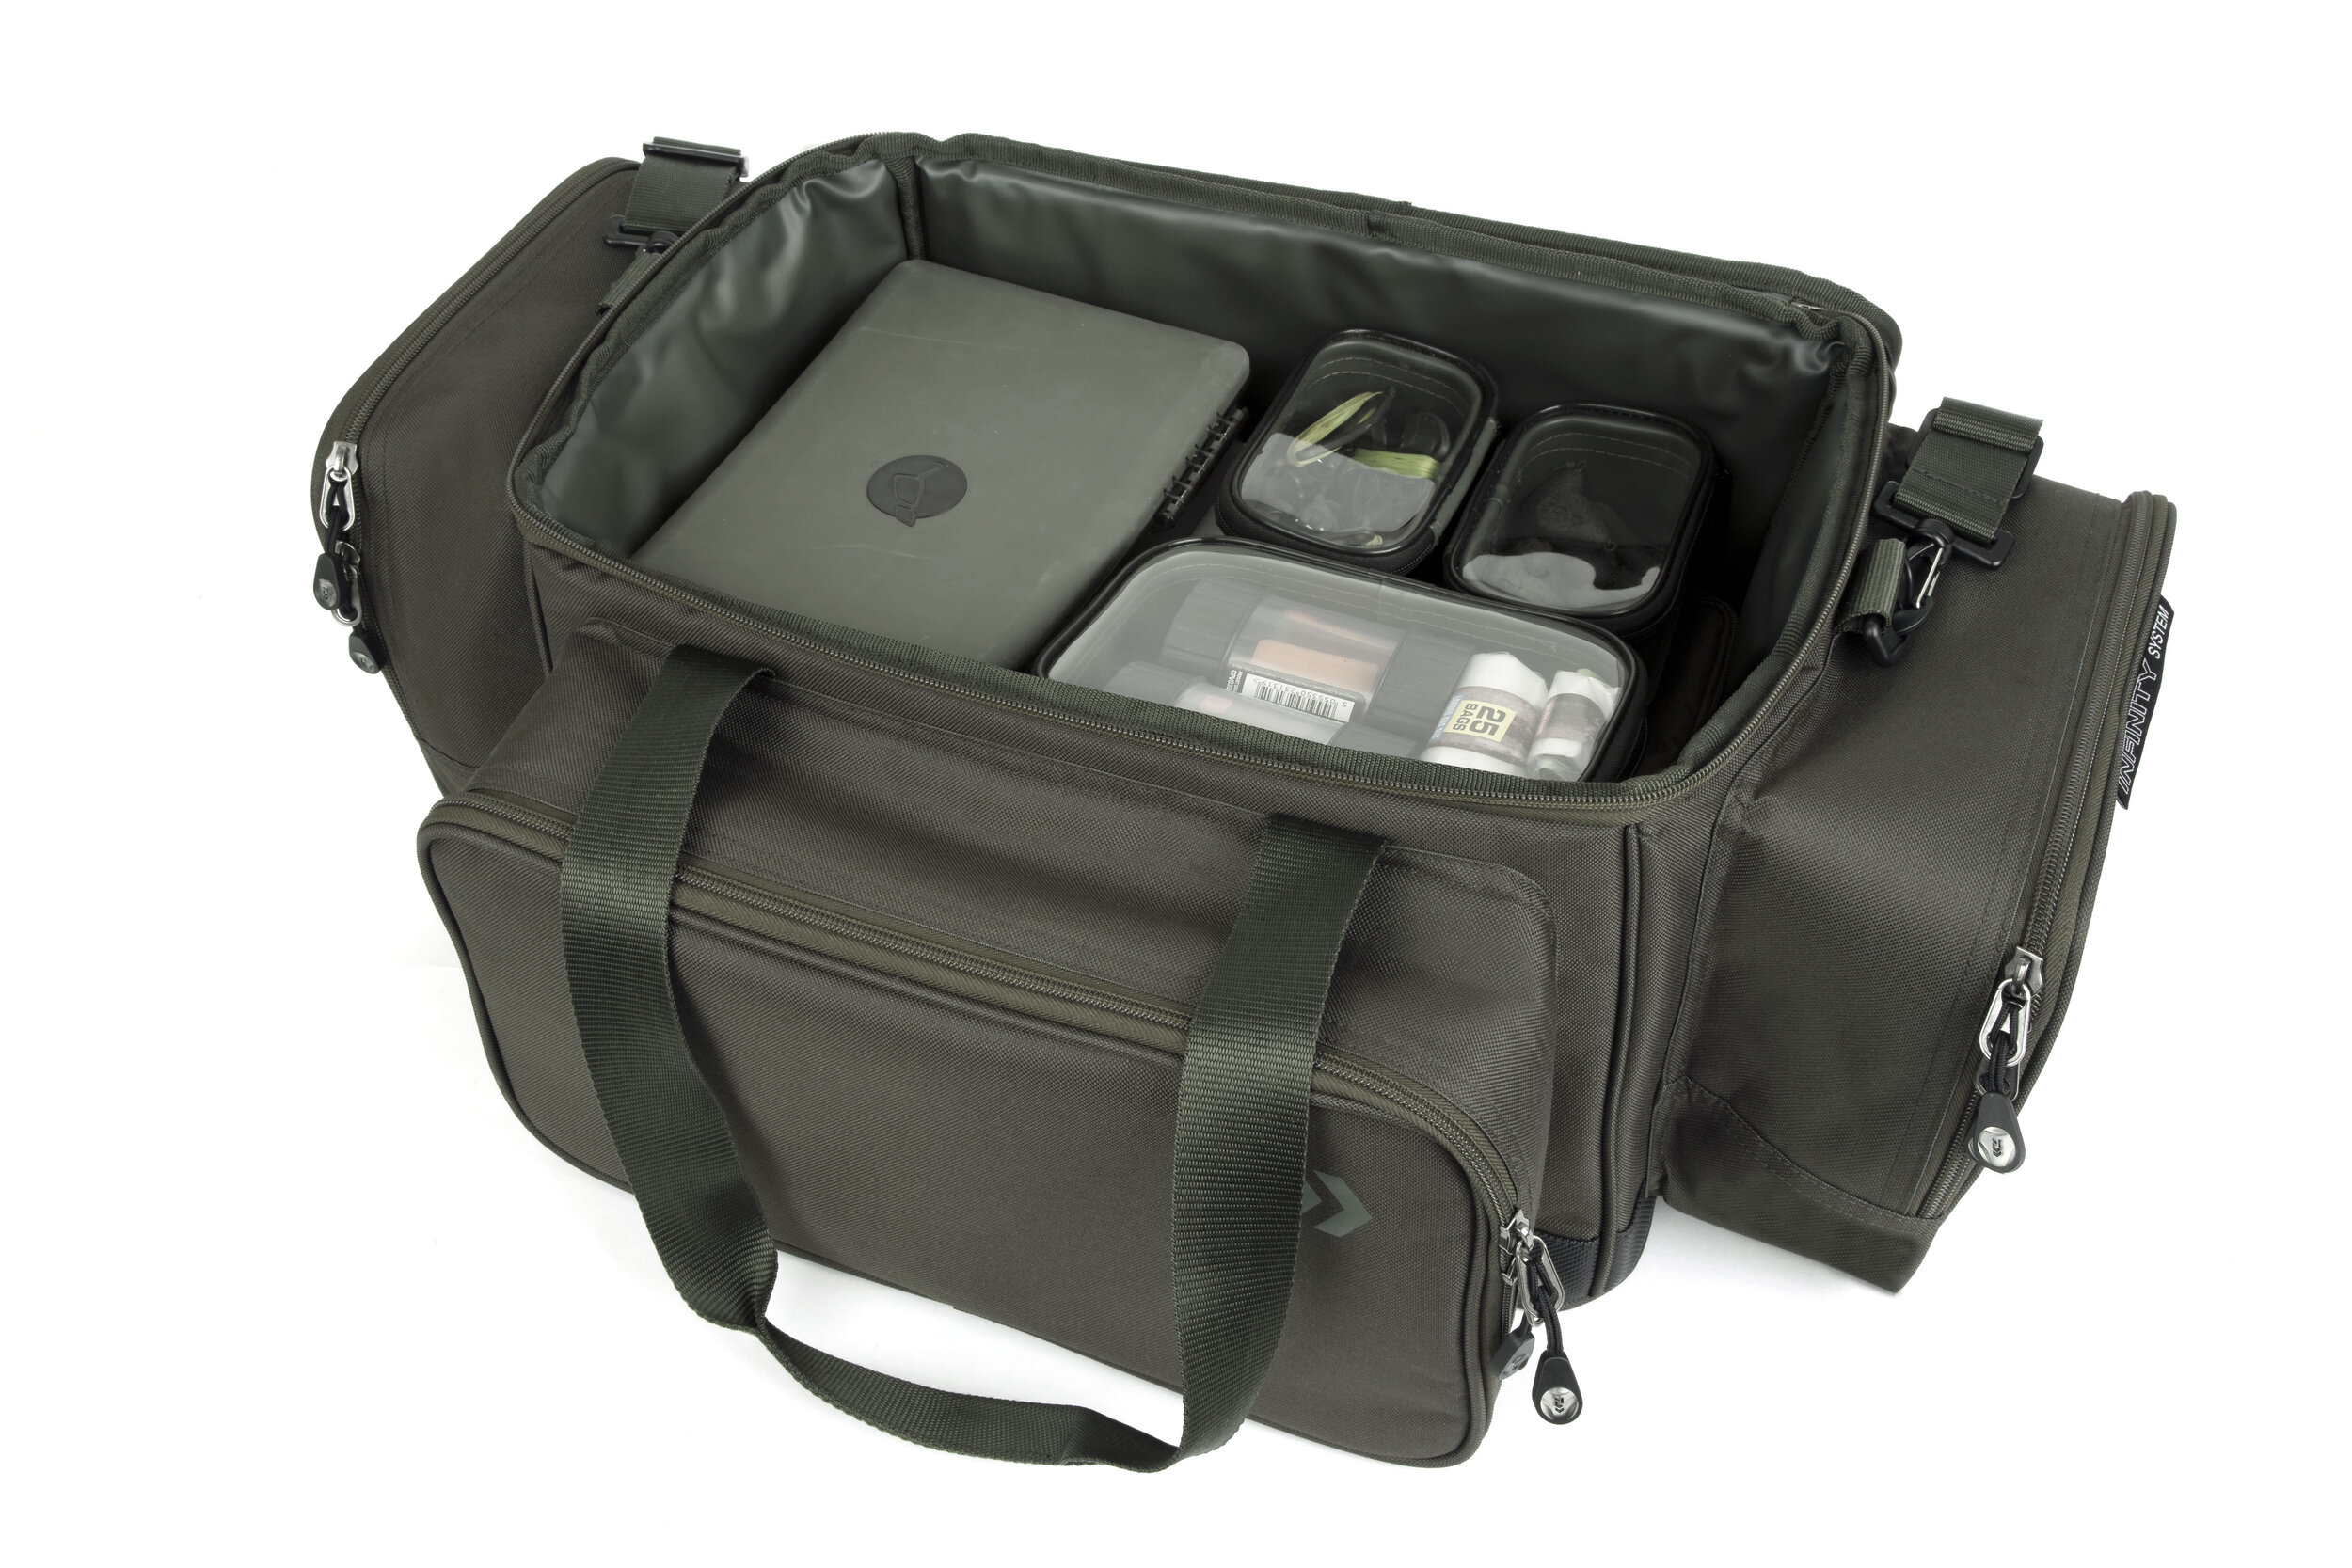 New Wychwood Eva CarryAll Bag All Sizes  Carp Fishing Luggage and Storage 